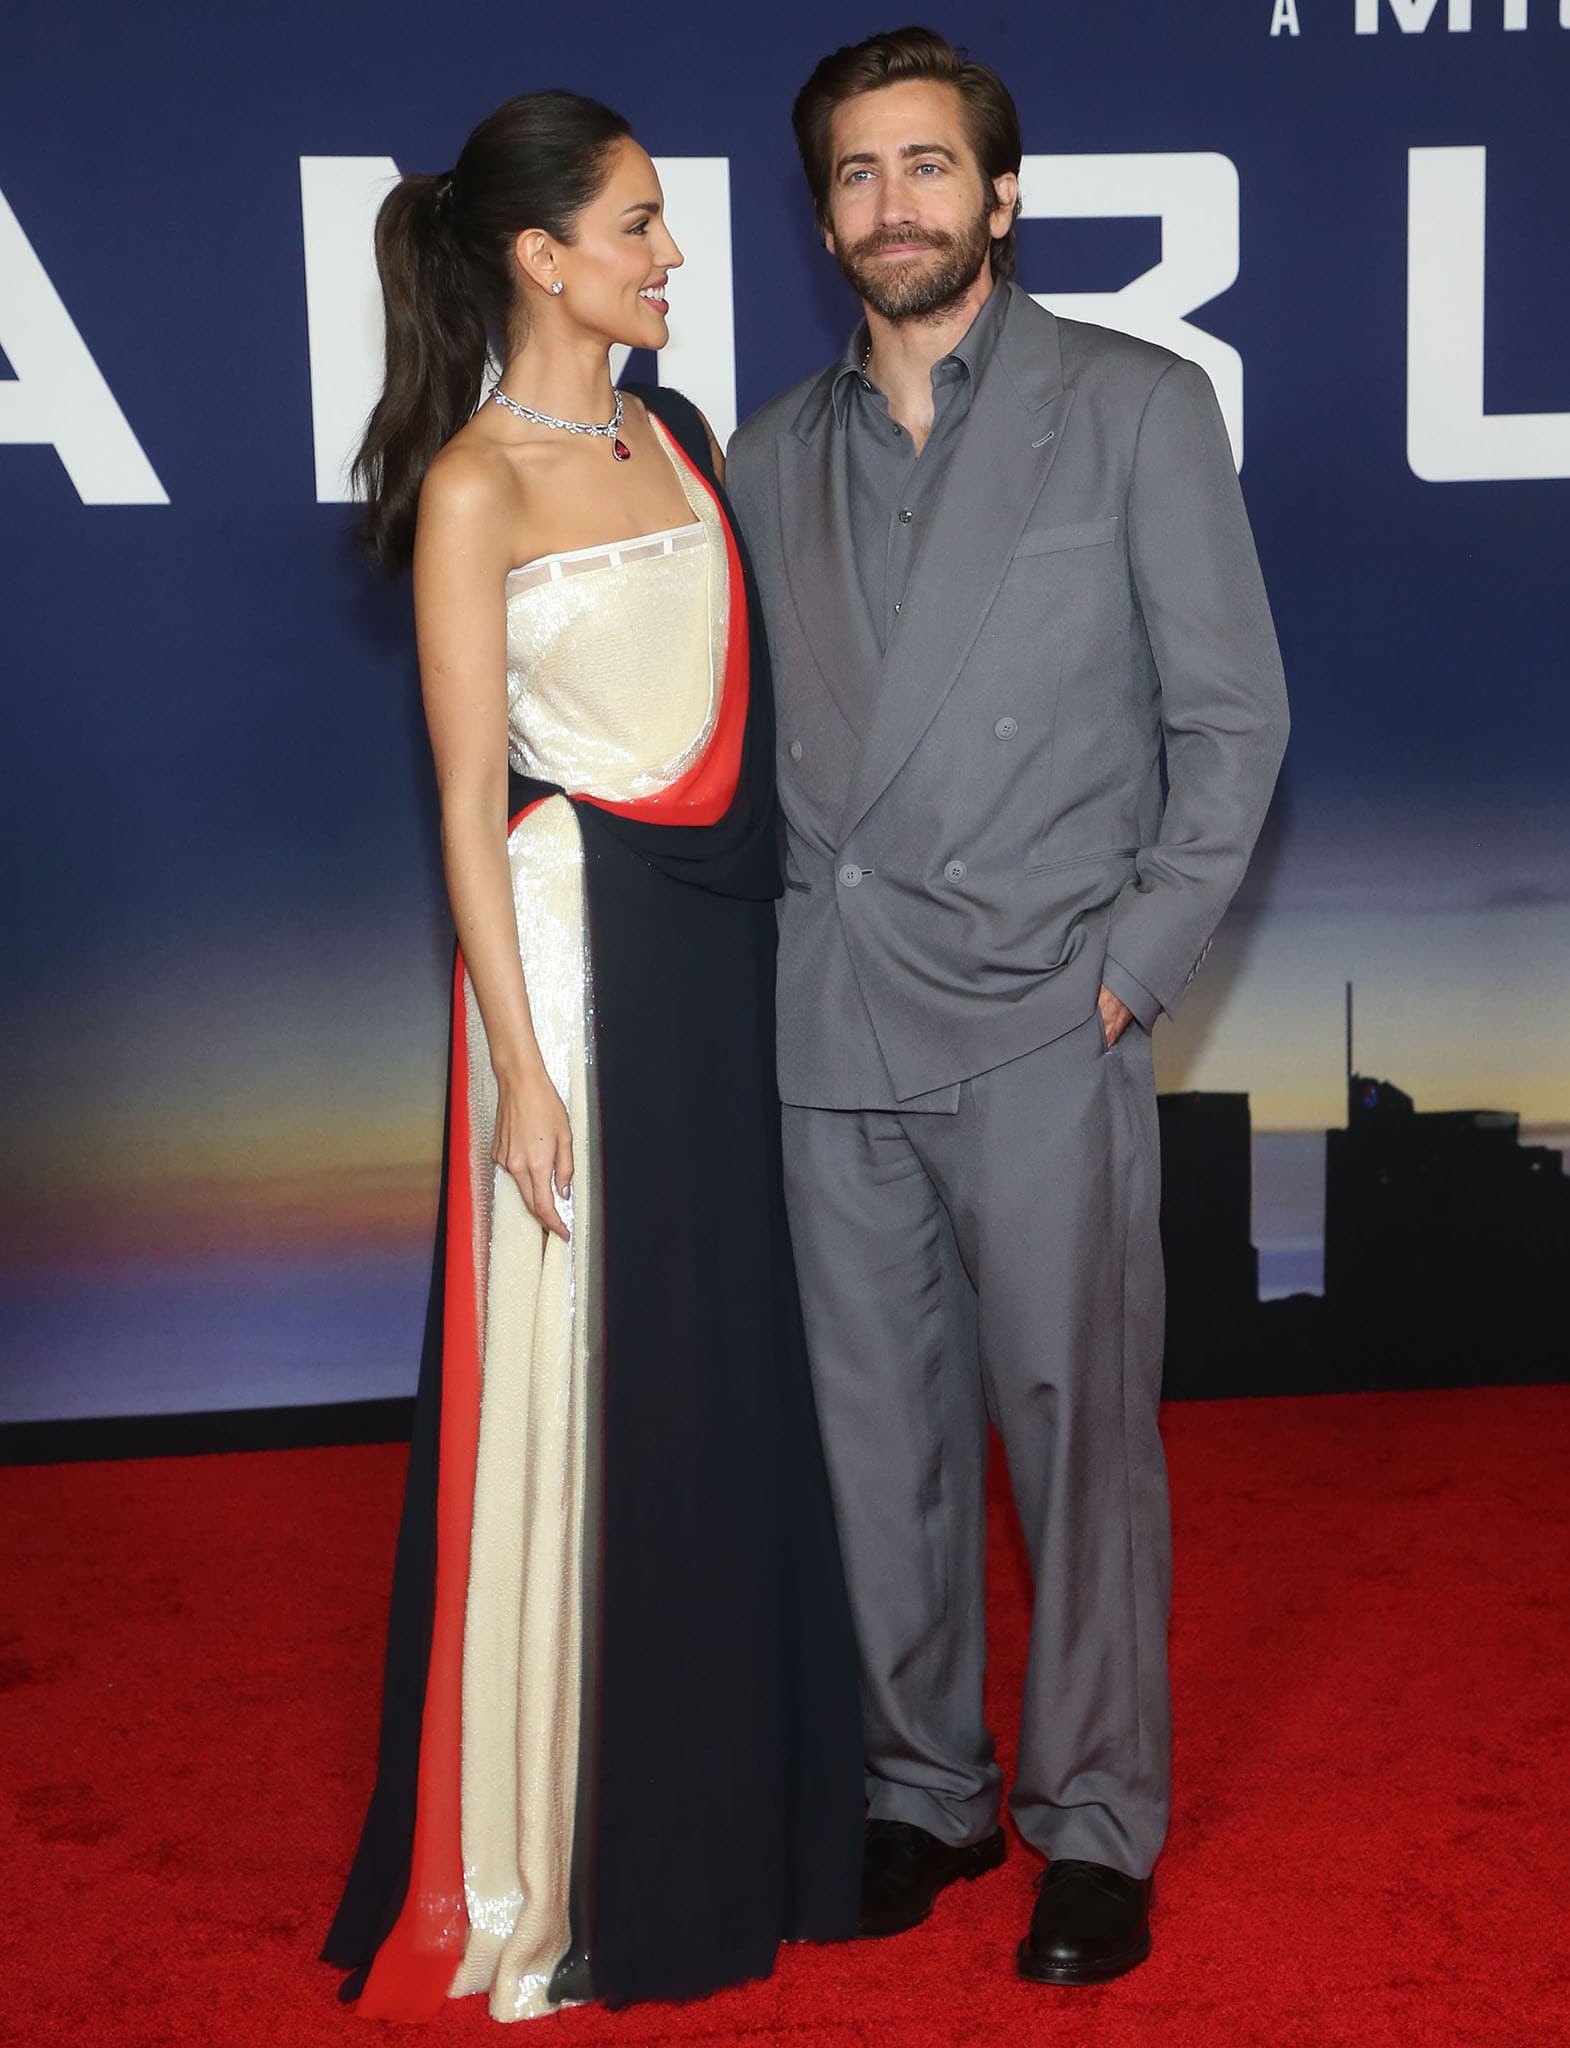 Eiza Gonzalez poses alongside lead star Jake Gyllenhaal, who looks dapper in a gray suit